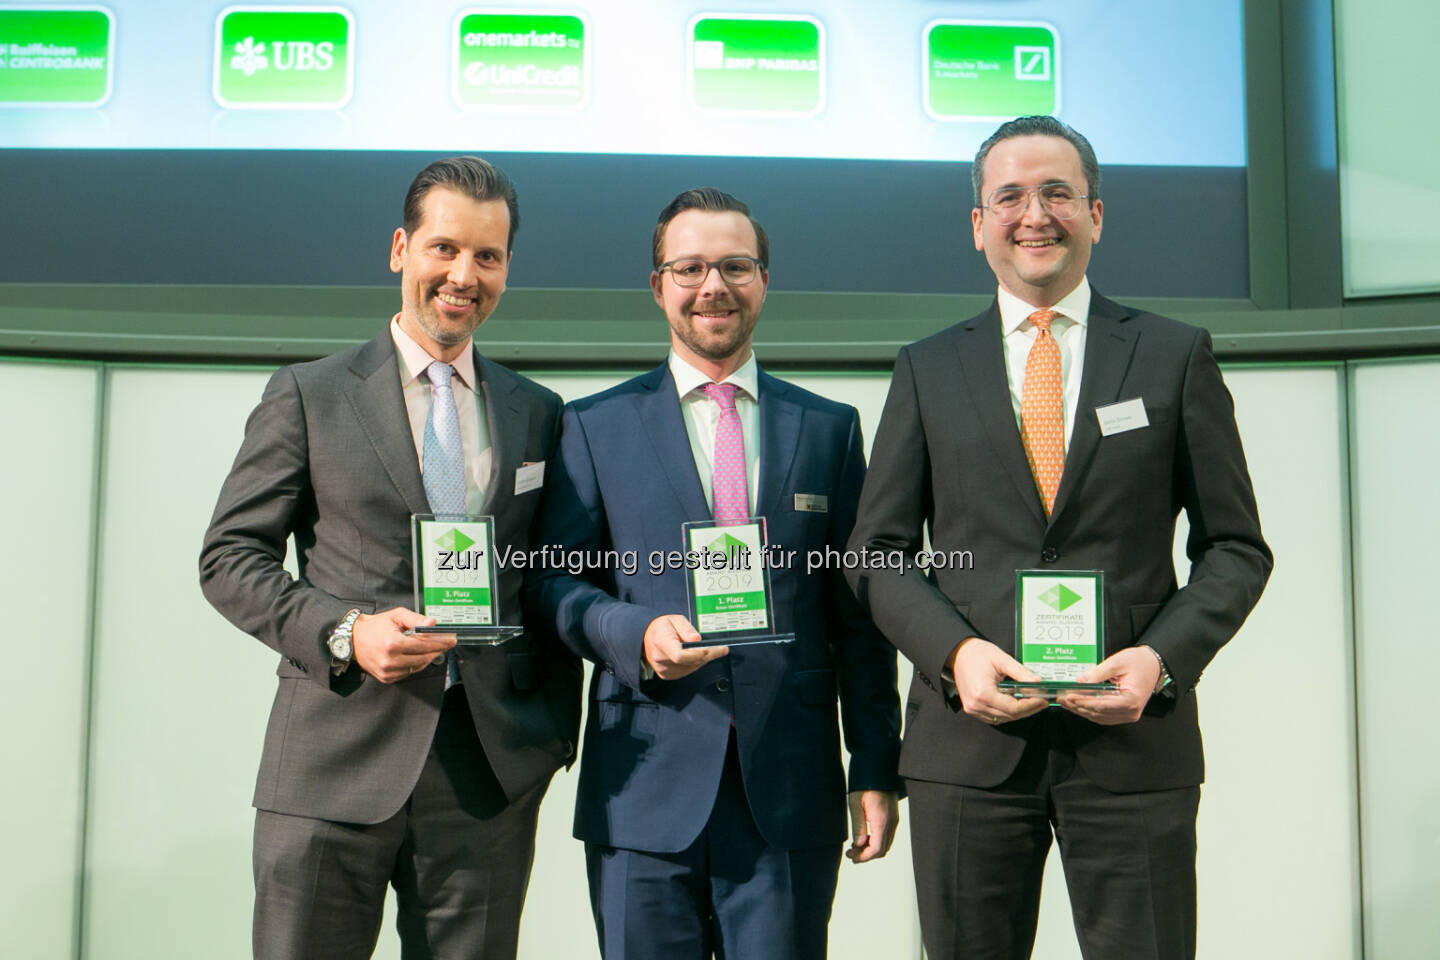 Zertifikate Award Austria 2019 - Bonus-Zertifikate